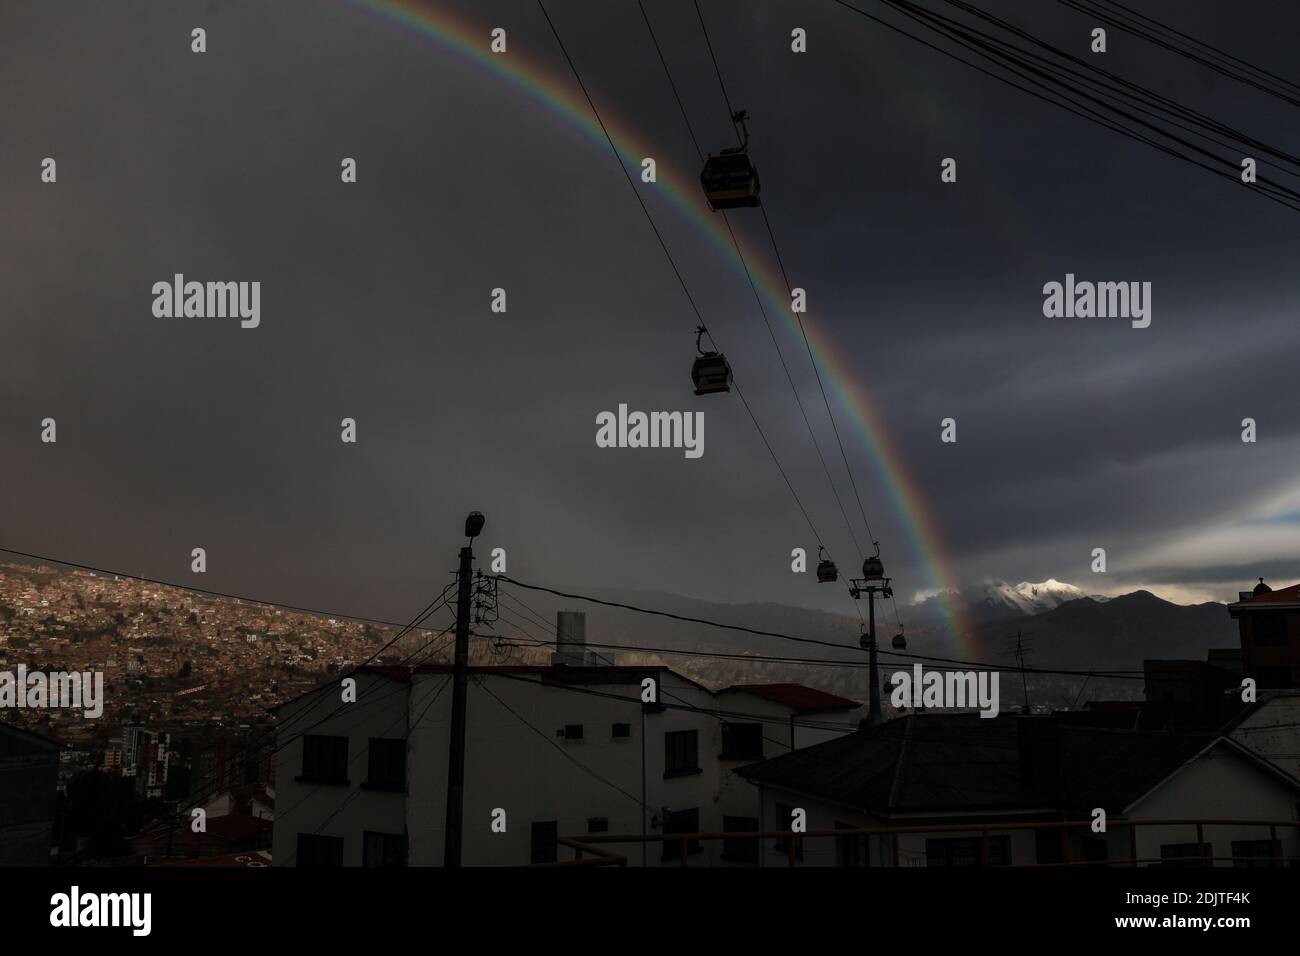 Après une pluie dans la ville de la Paz Bolivie, vous pouvez voir un arc-en-ciel orné par le transport aérien Teleferico. Crédits: Abad Miranda Banque D'Images